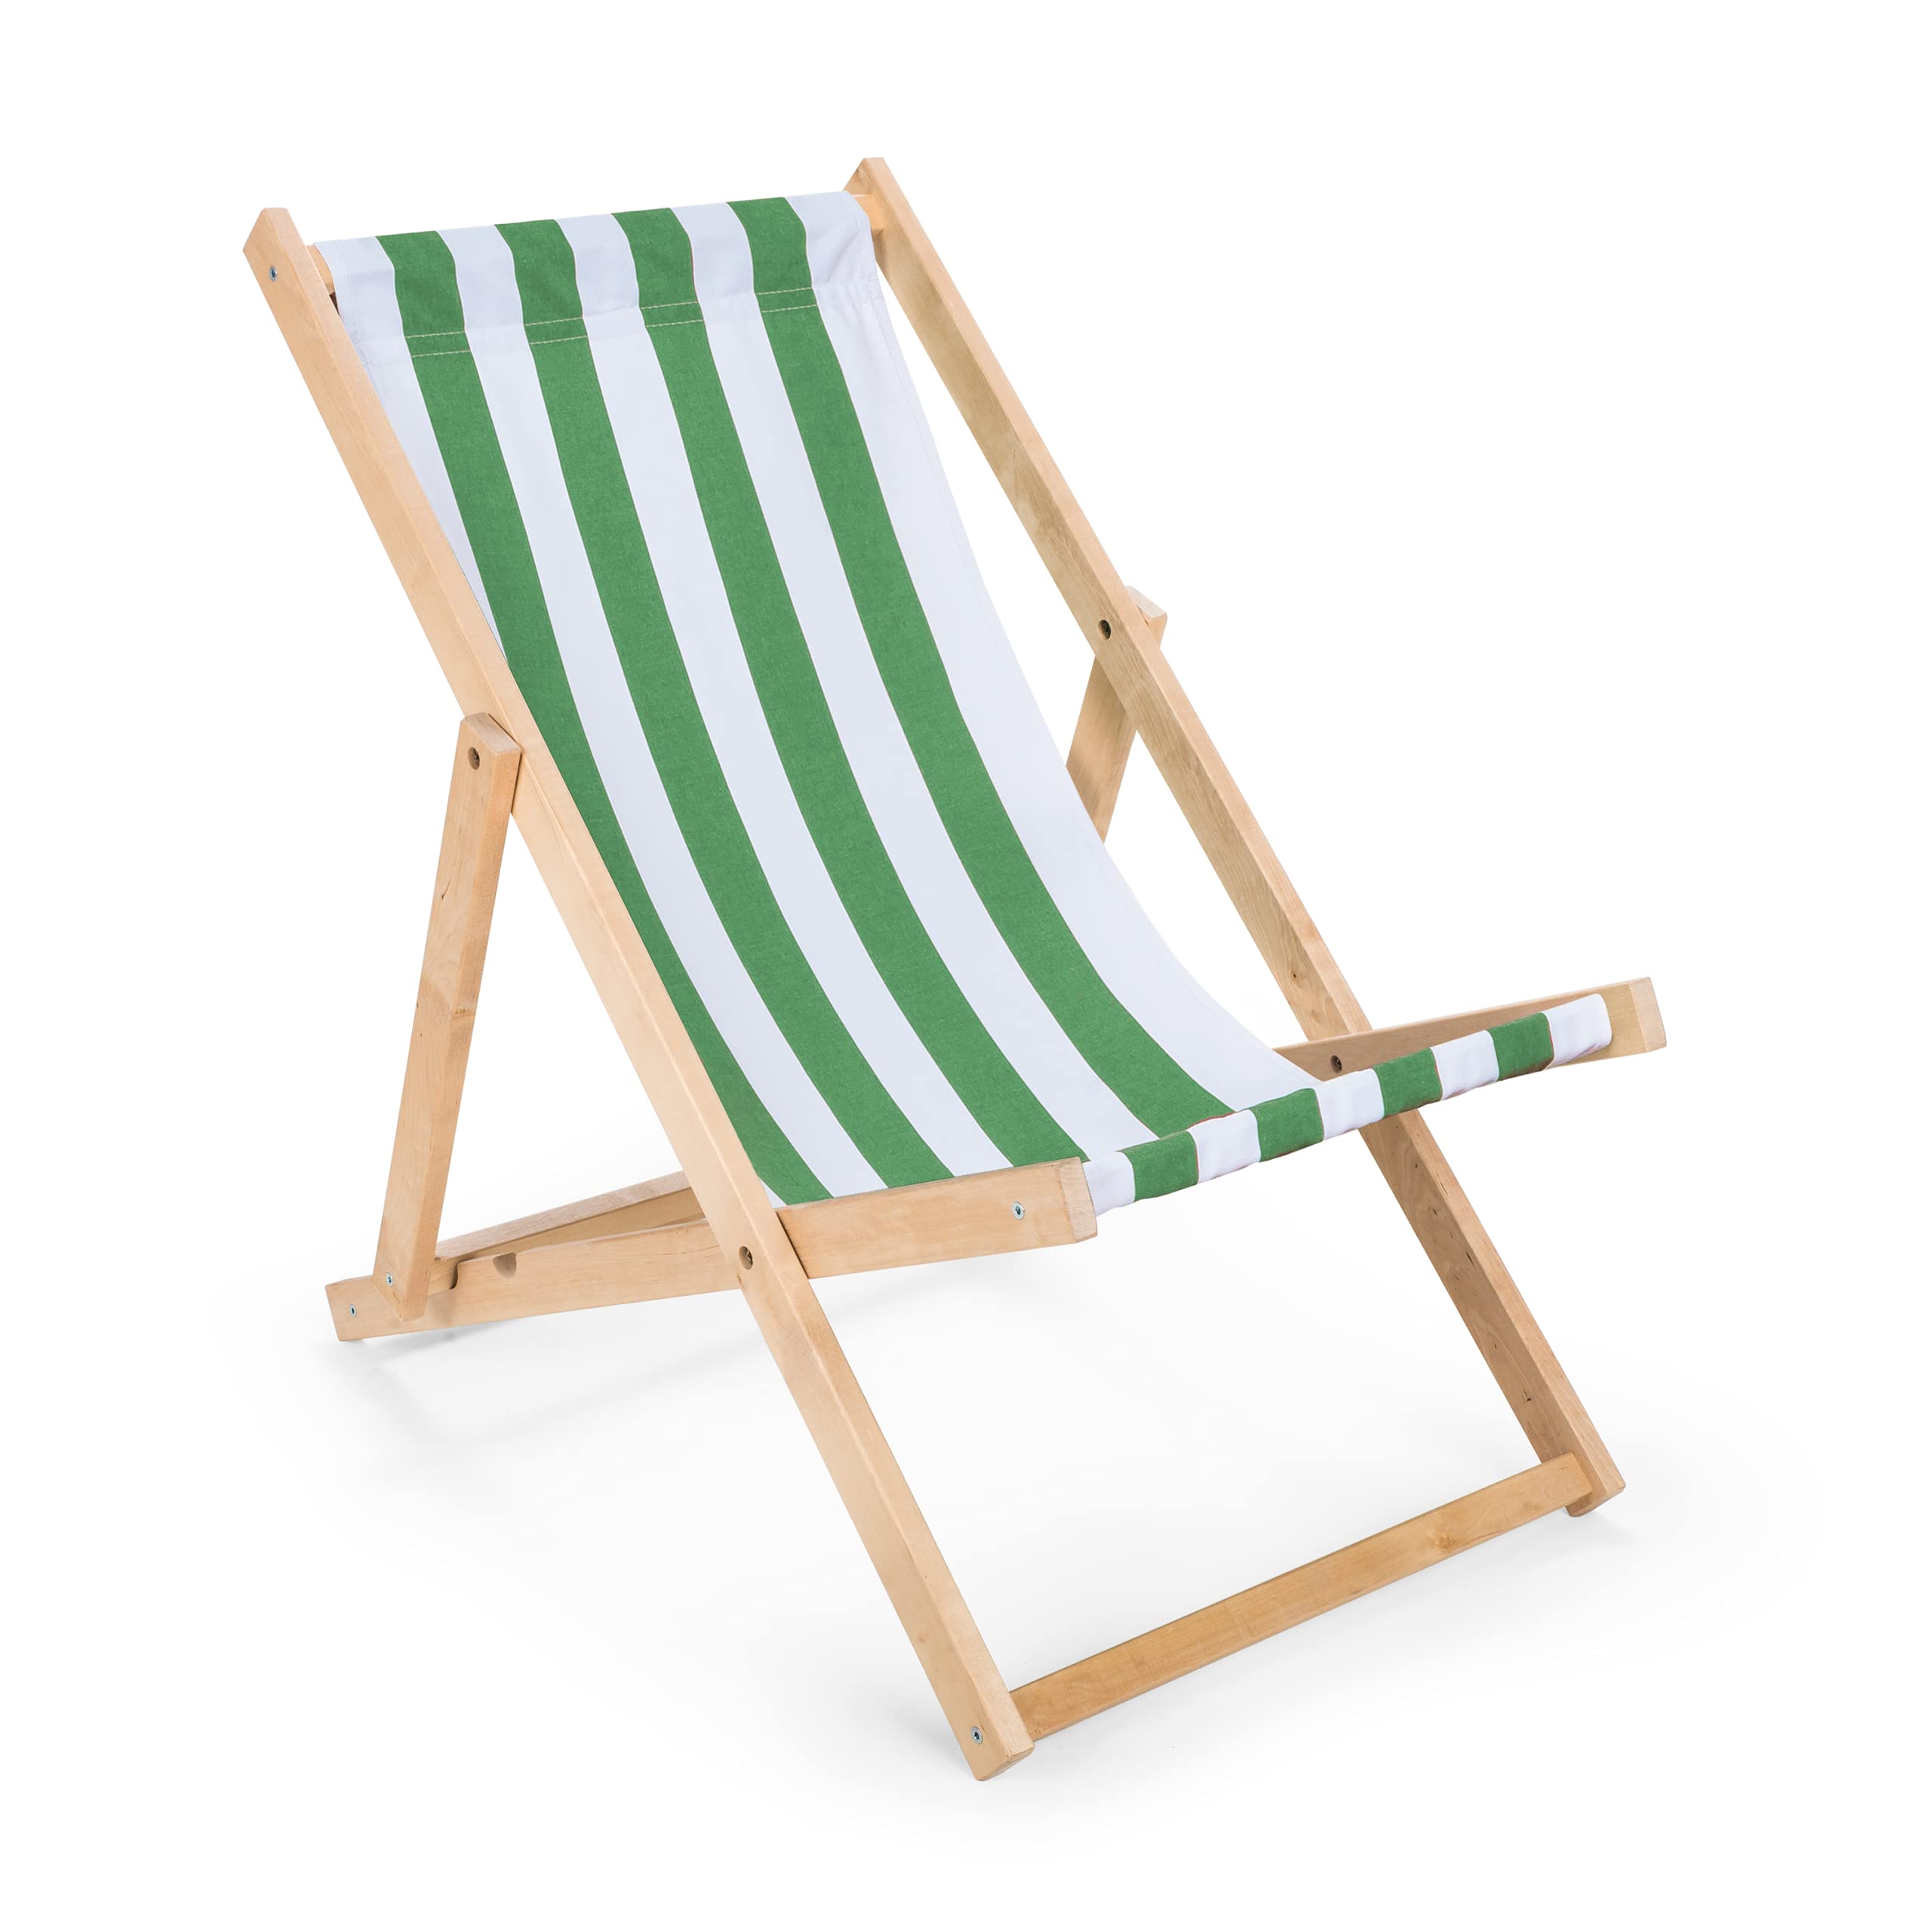 IMPWOOD Liegestuhl grün-weiß, Strandstuhl aus Holz,bis 100 kg, klappbar,Liege aus Buchenholz, Holzklappstuhl,Strandliege,Klappliege für Strand,Holz-Liegestuhl